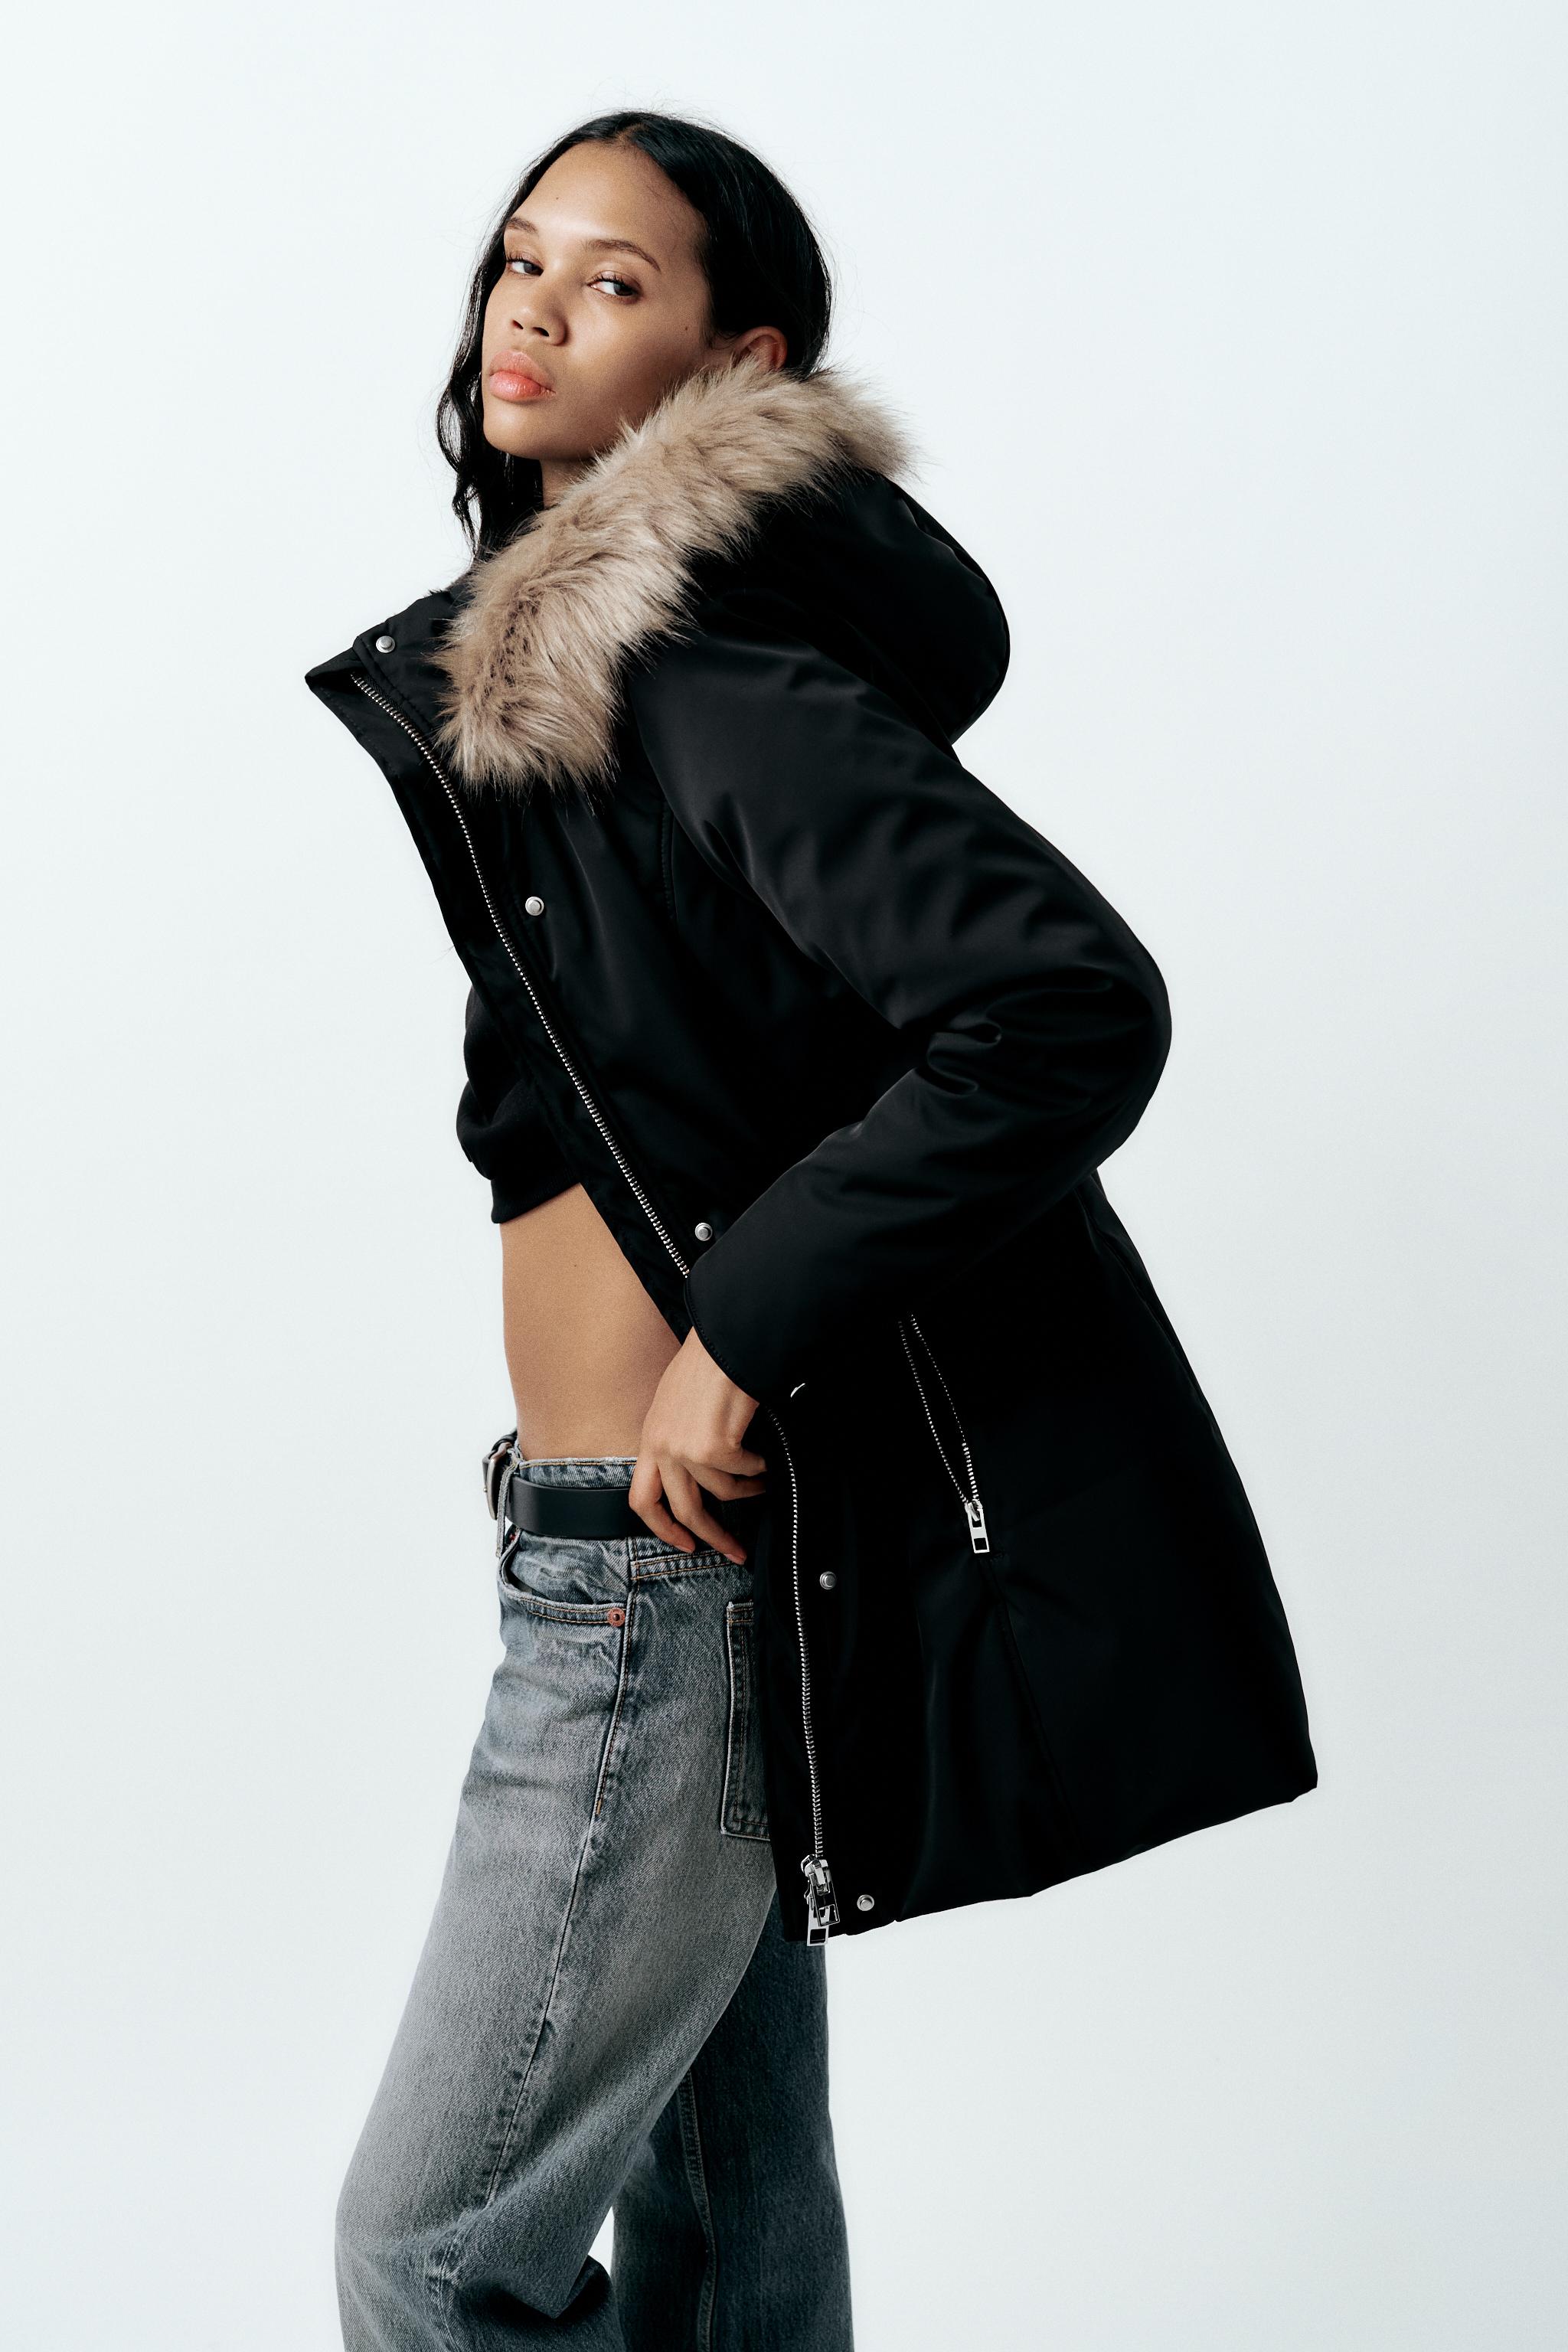 Women's Faux Fur Coats, Explore our New Arrivals